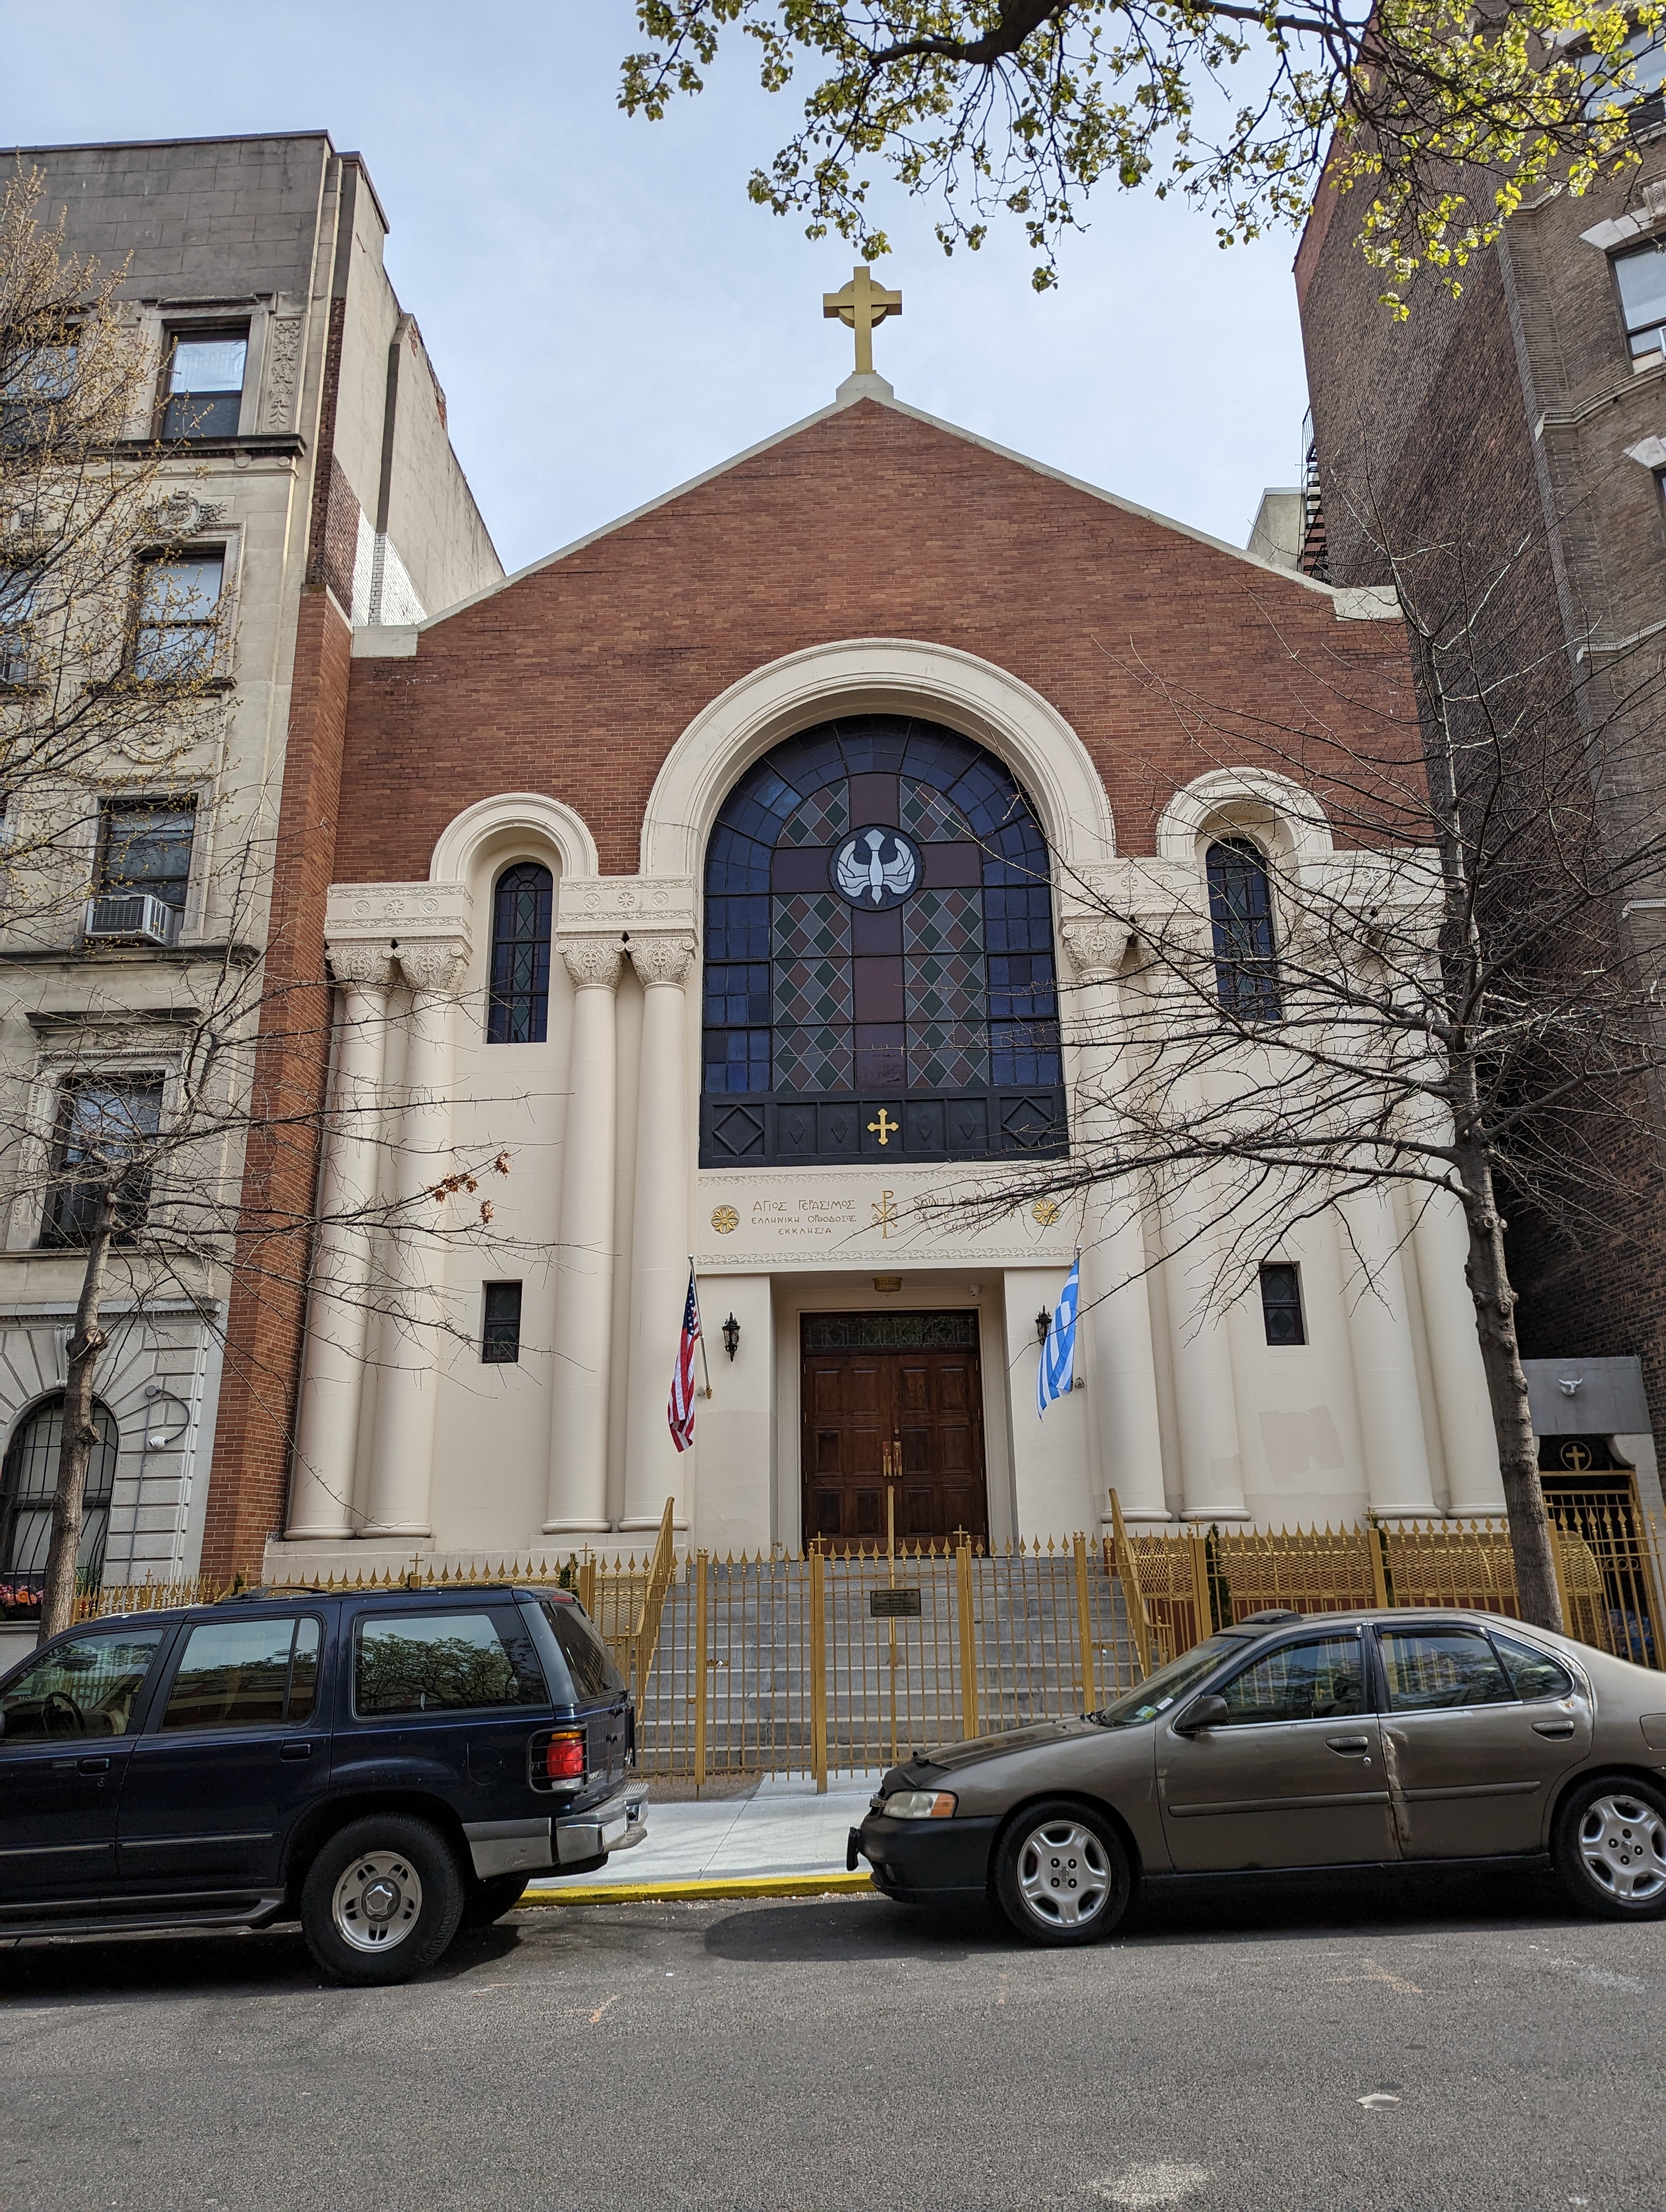 155 West 105th Street: St. Gerasimos Greek Orthodox Church